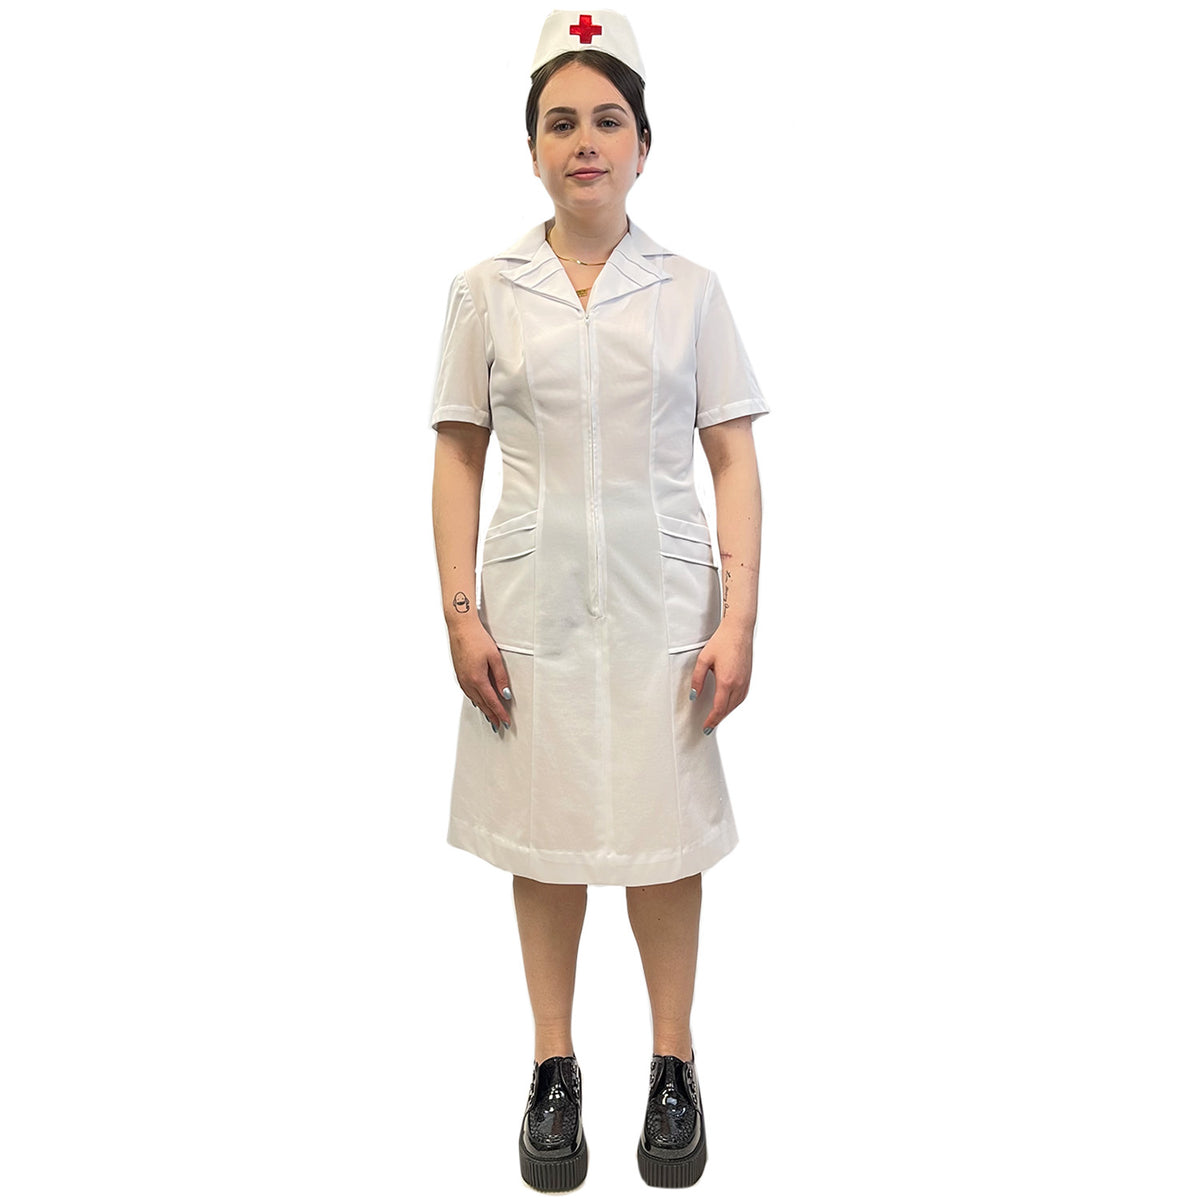 Retro White Nurse Uniform Adult Costume